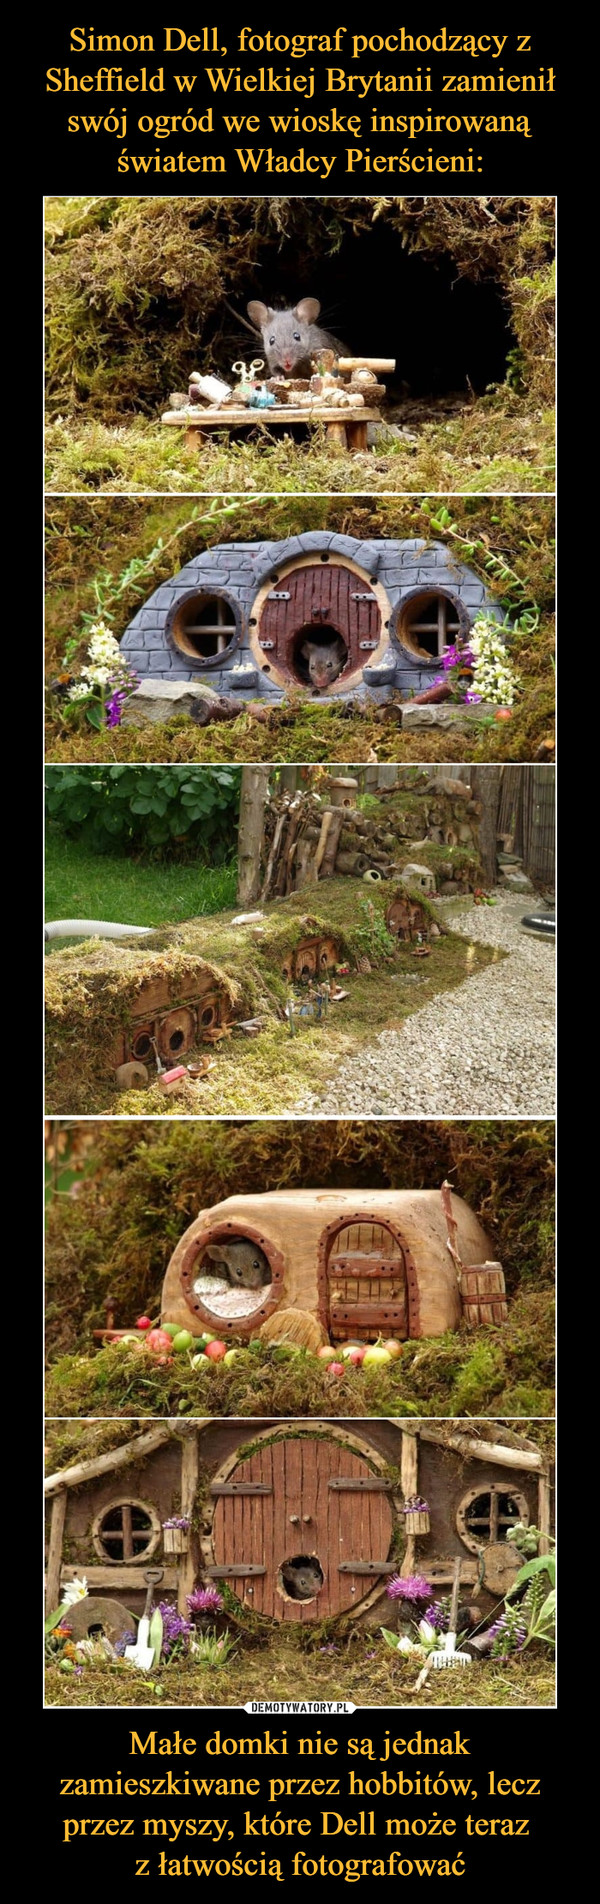 Simon Dell, fotograf pochodzący z Sheffield w Wielkiej Brytanii zamienił swój ogród we wioskę inspirowaną światem Władcy Pierścieni: Małe domki nie są jednak zamieszkiwane przez hobbitów, lecz przez myszy, które Dell może teraz 
z łatwością fotografować